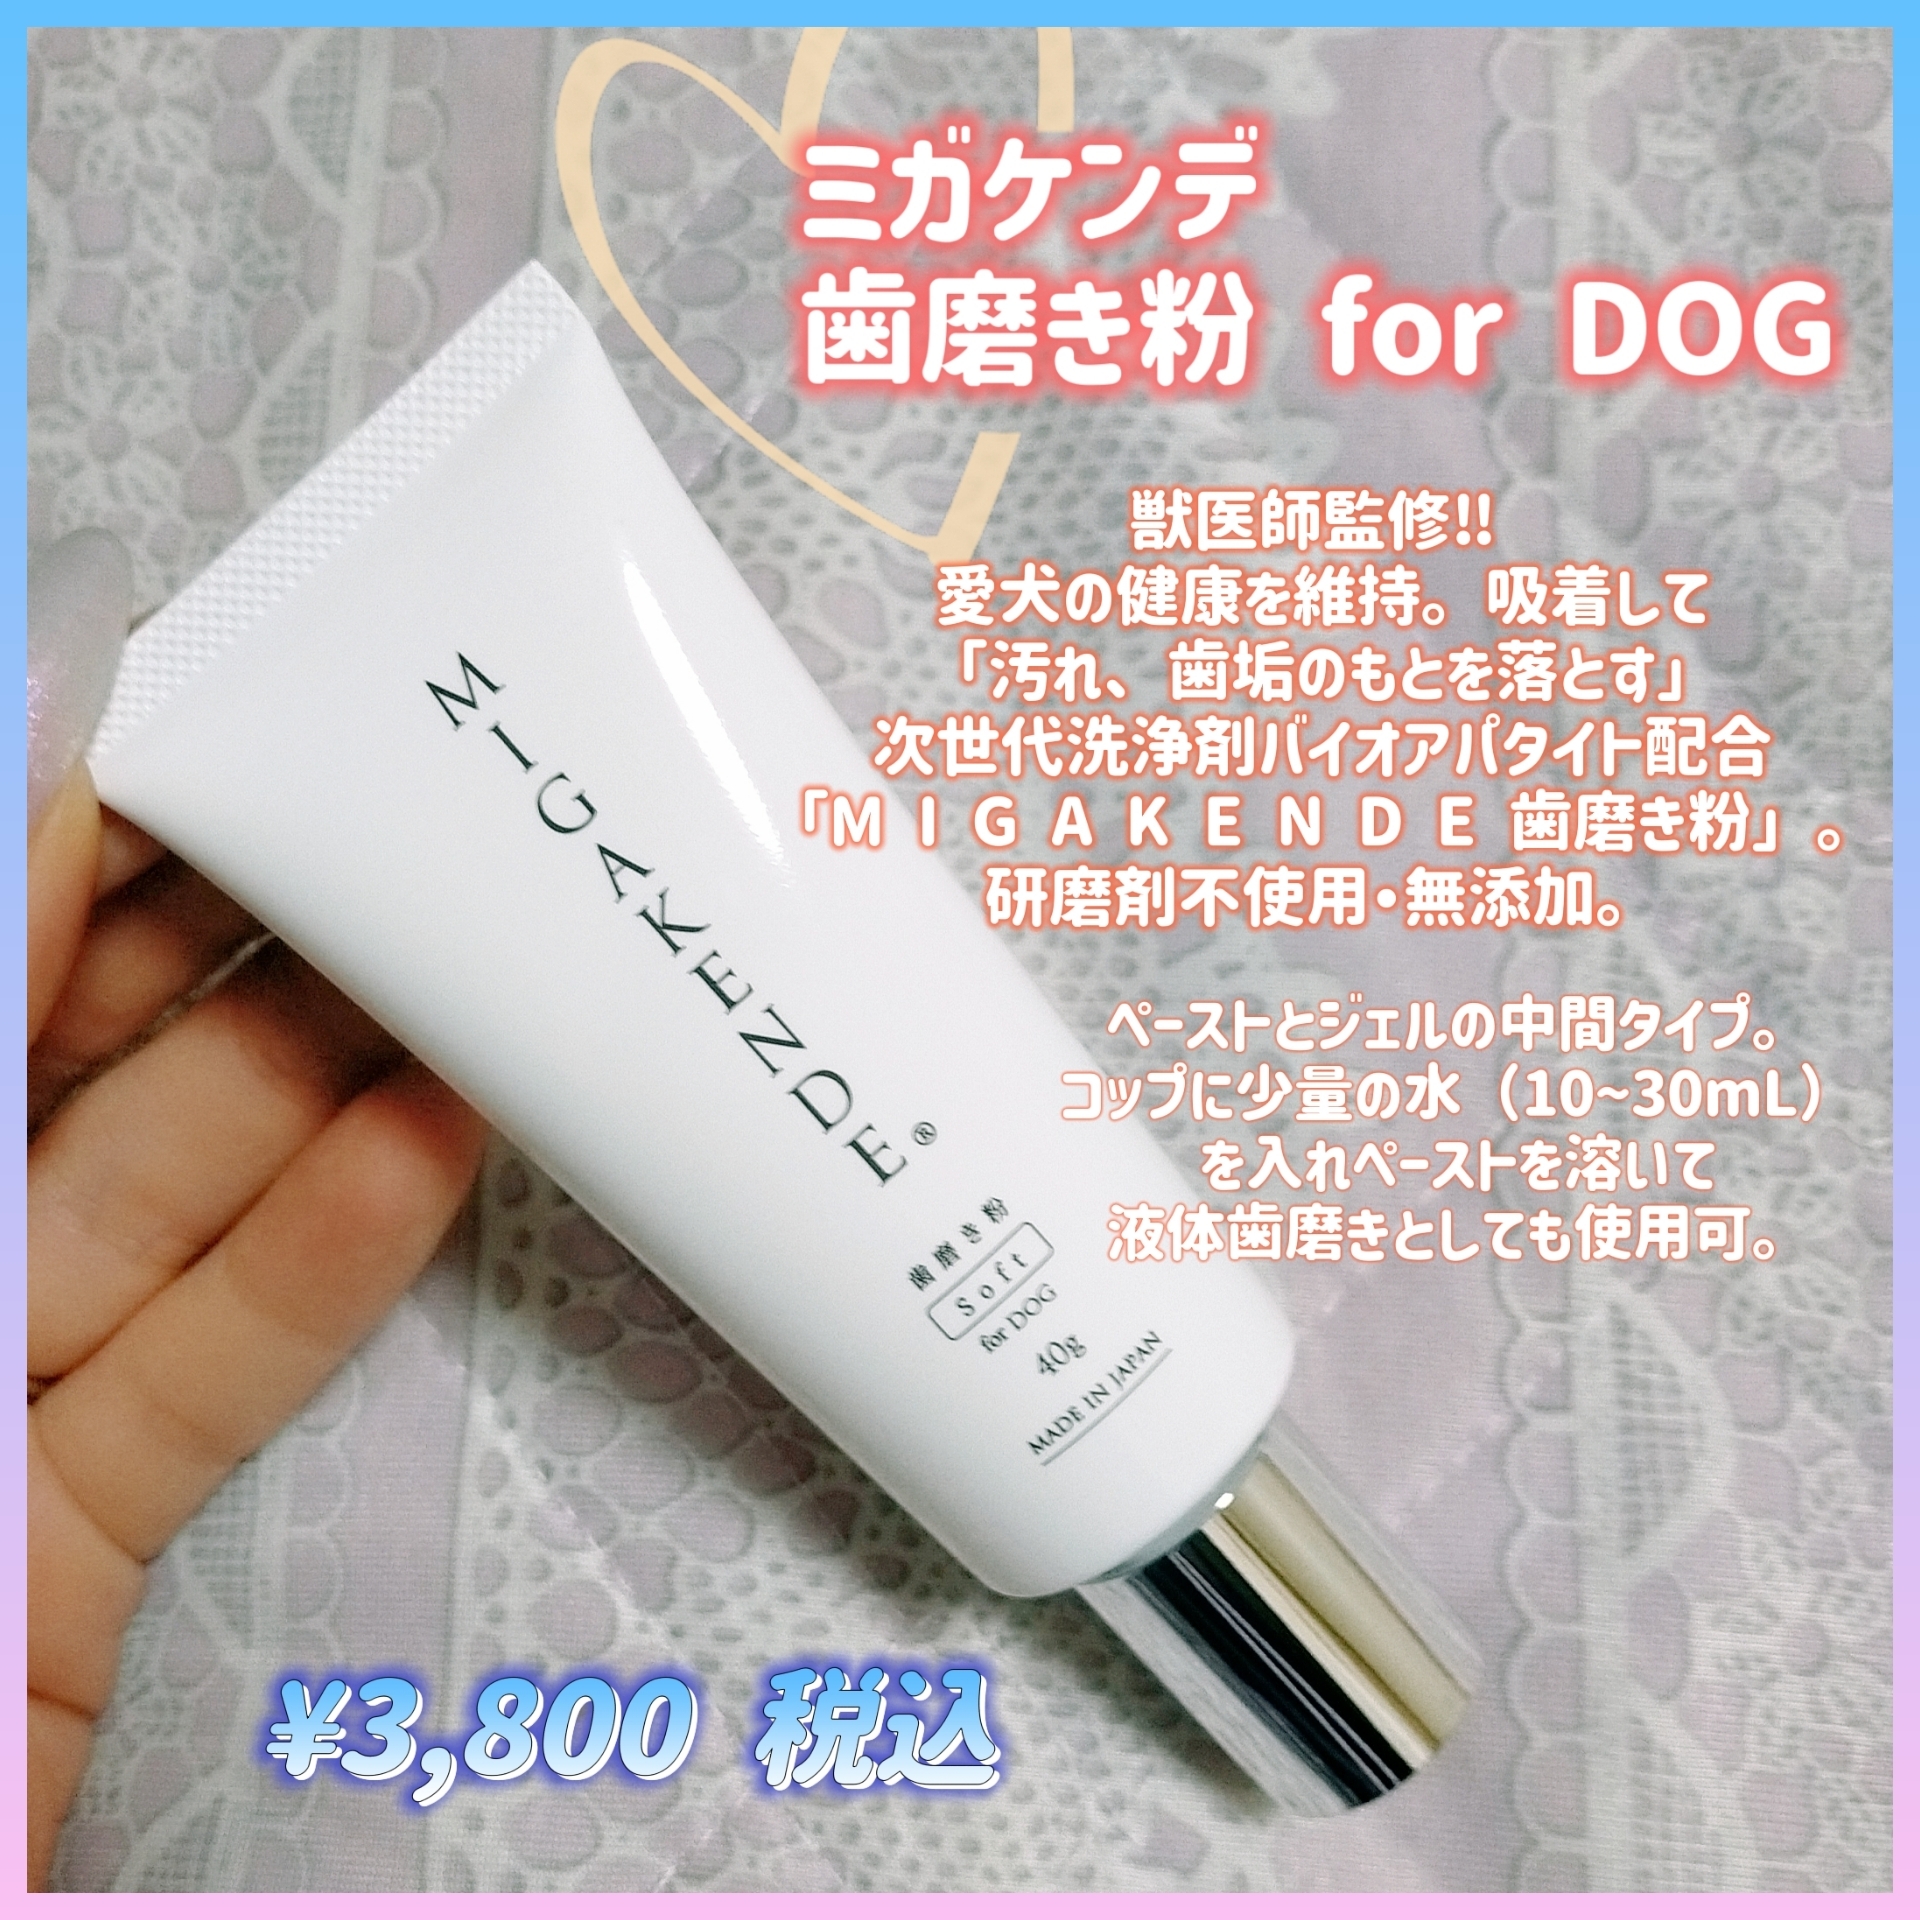 MIGAKENDE(ミガケンデ) 歯磨き粉 for DOGの良い点・メリットに関するみこさんの口コミ画像1